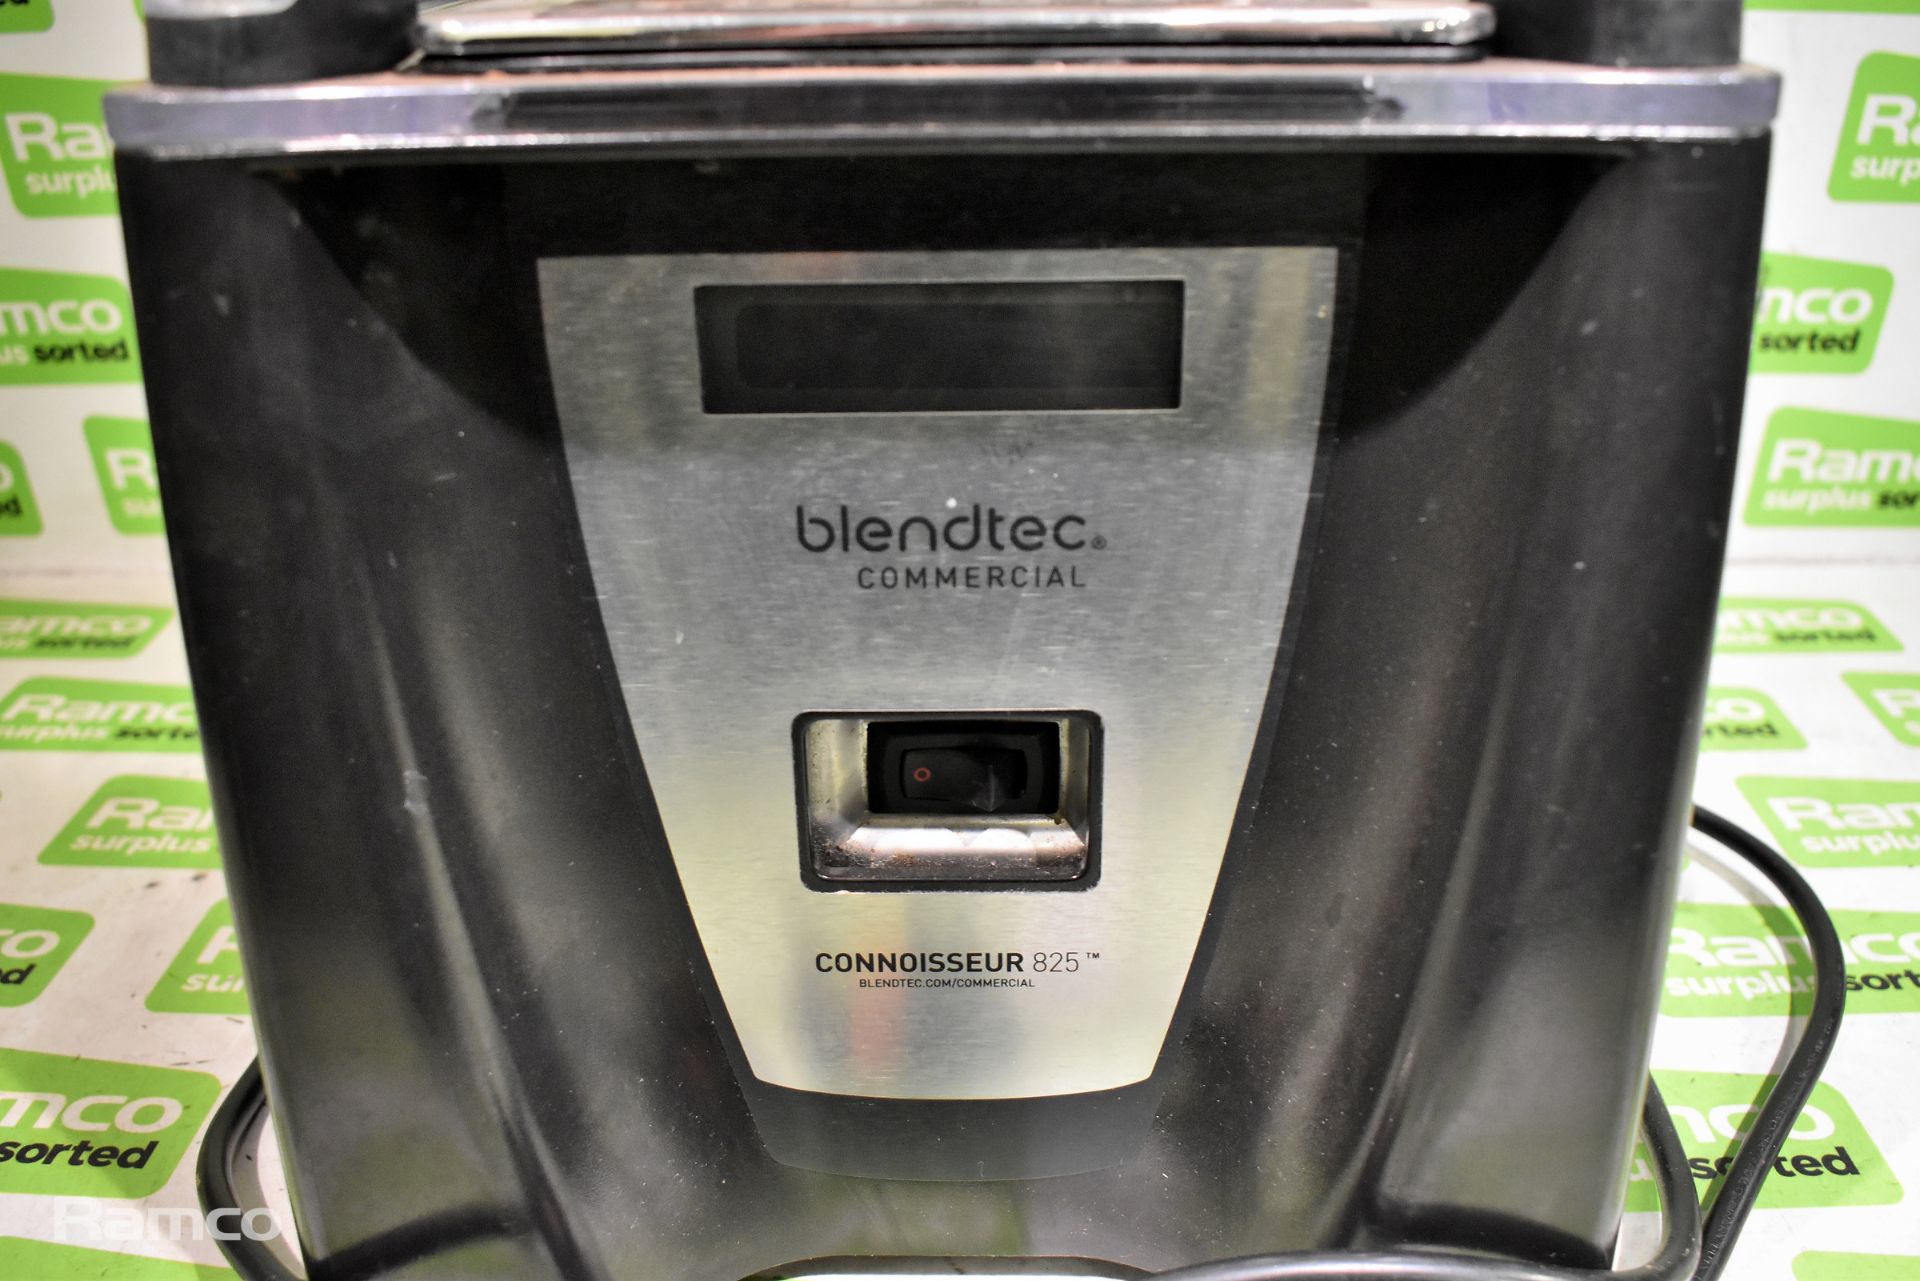 Blendtec Connoisseur 825 commercial blender - Image 2 of 6